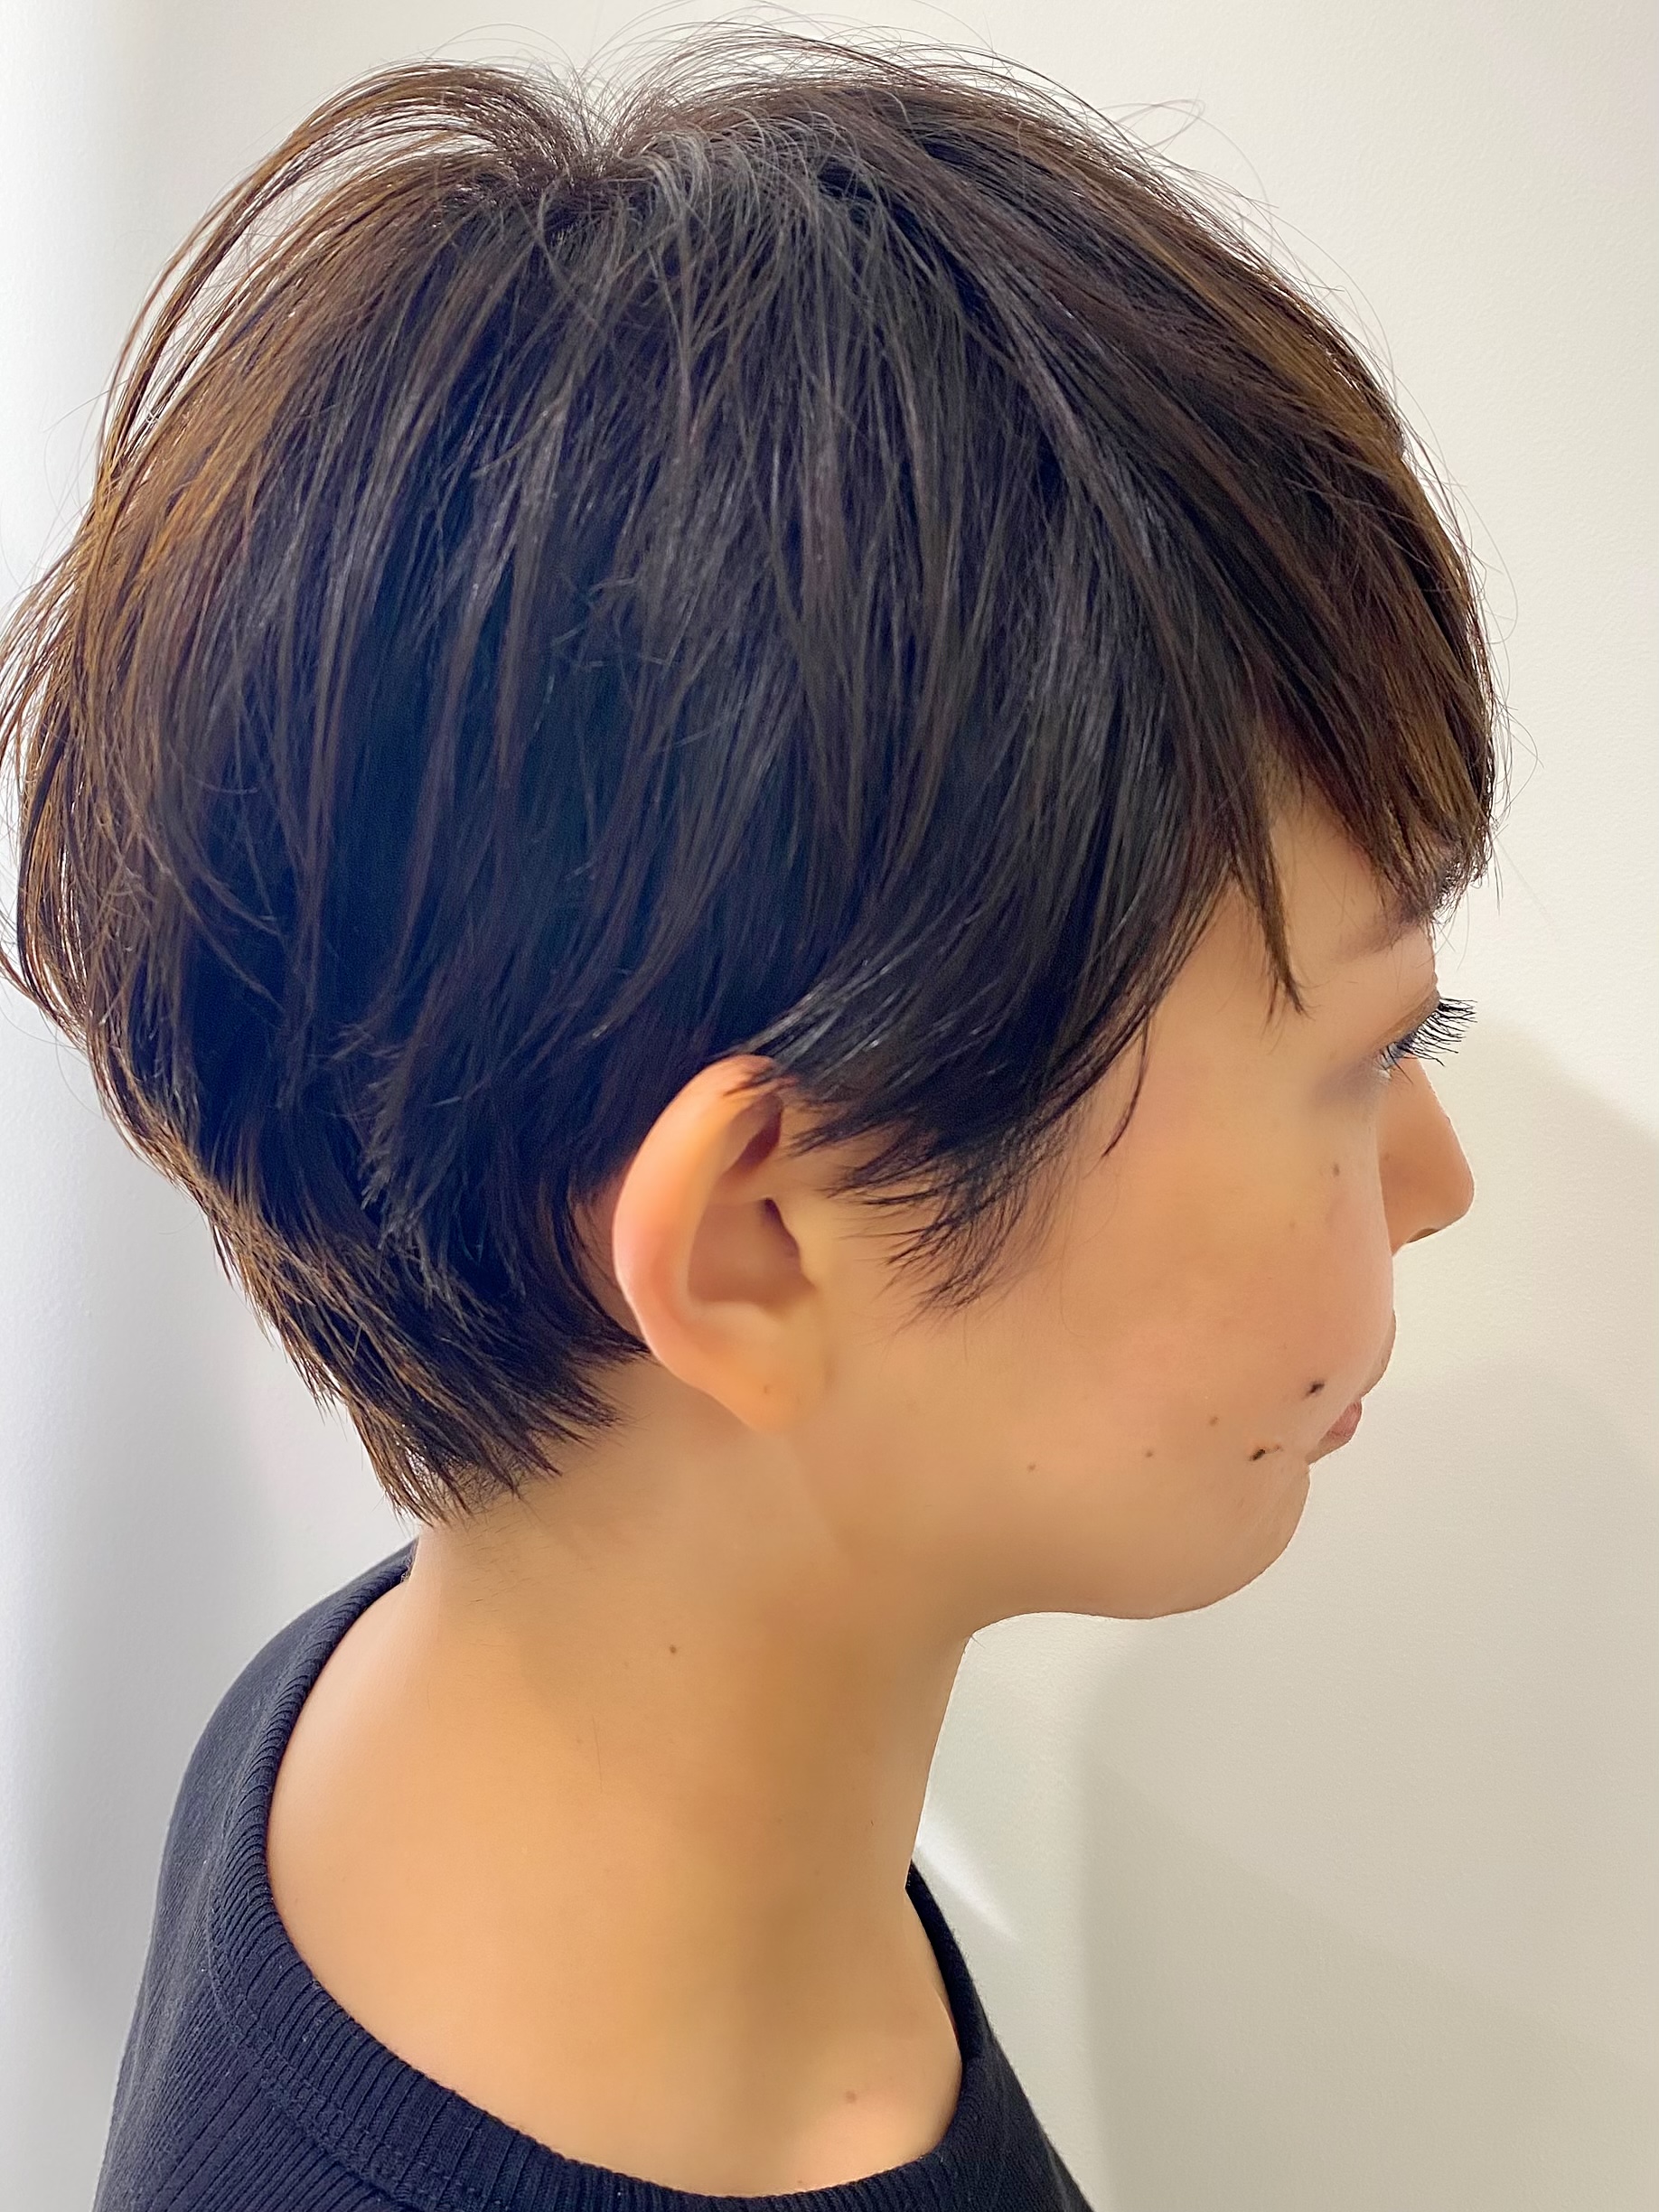 クセ毛 マニッシュショート 新宿サウス店サロンニュース Mod S Hair オフィシャルサイト ヘアサロン 美容室 美容院